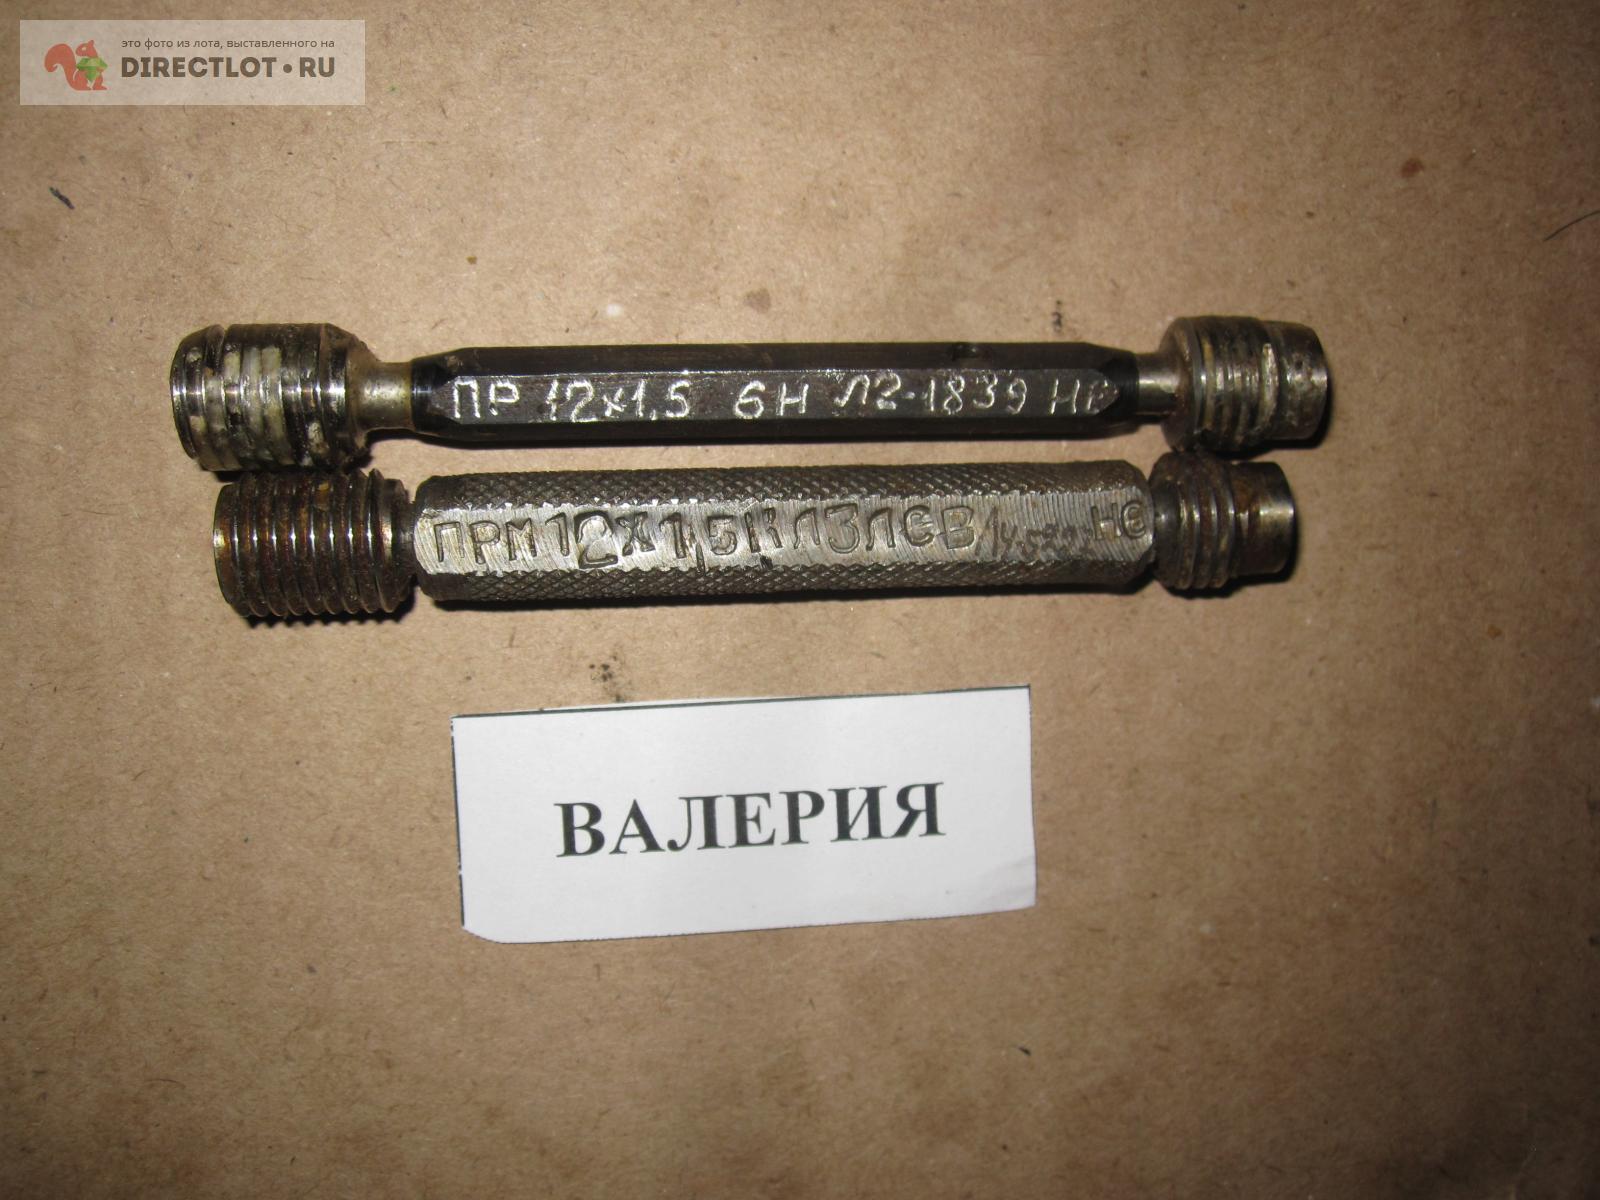 -пробка резьбовой 12х1,5 ПР/НЕ, см. описание  в Челябинске .